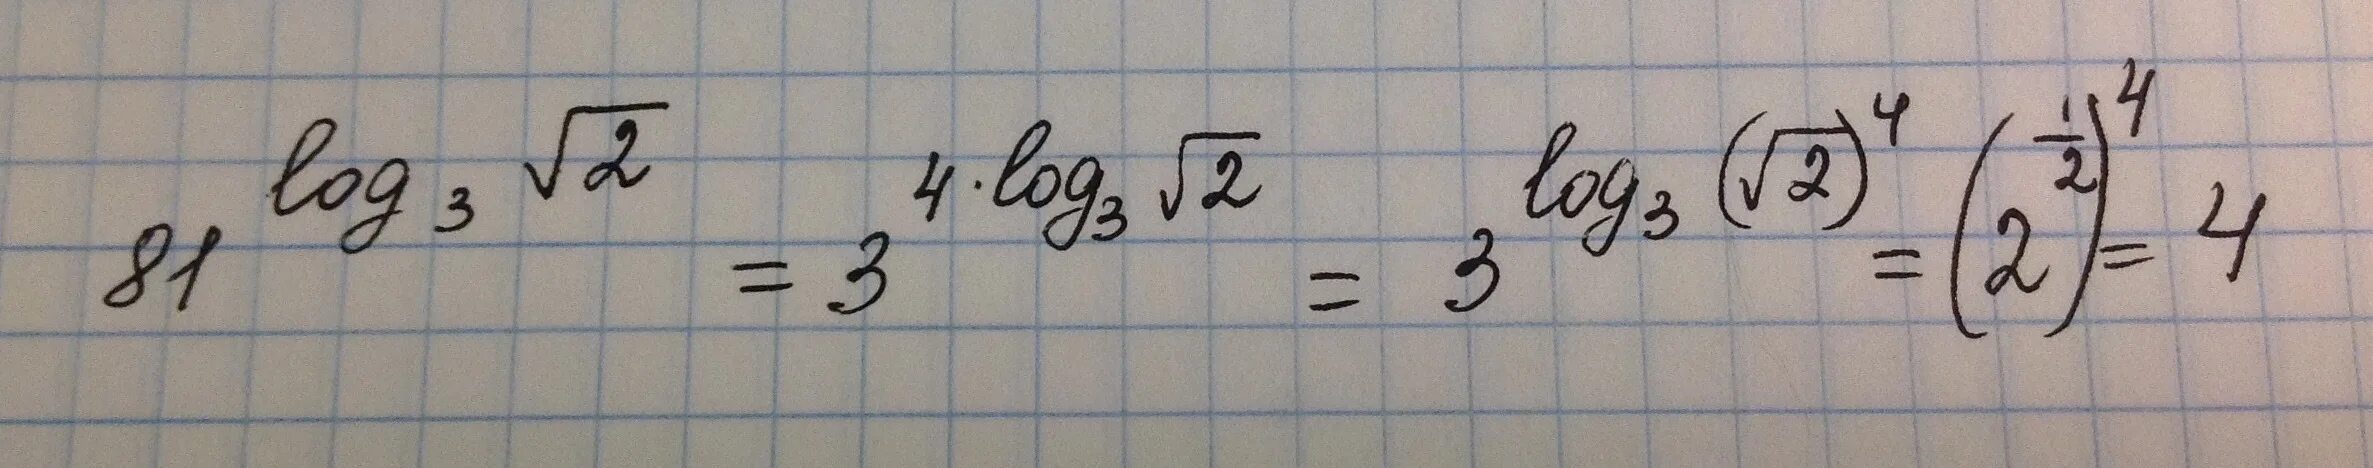 Вычислите 3 корень 81. Логарифм по основанию корень из 3. Логарифм по основанию корень из 2. Логарифм корень из 3 по основанию 2. Логарифм корня из трех по основанию три.